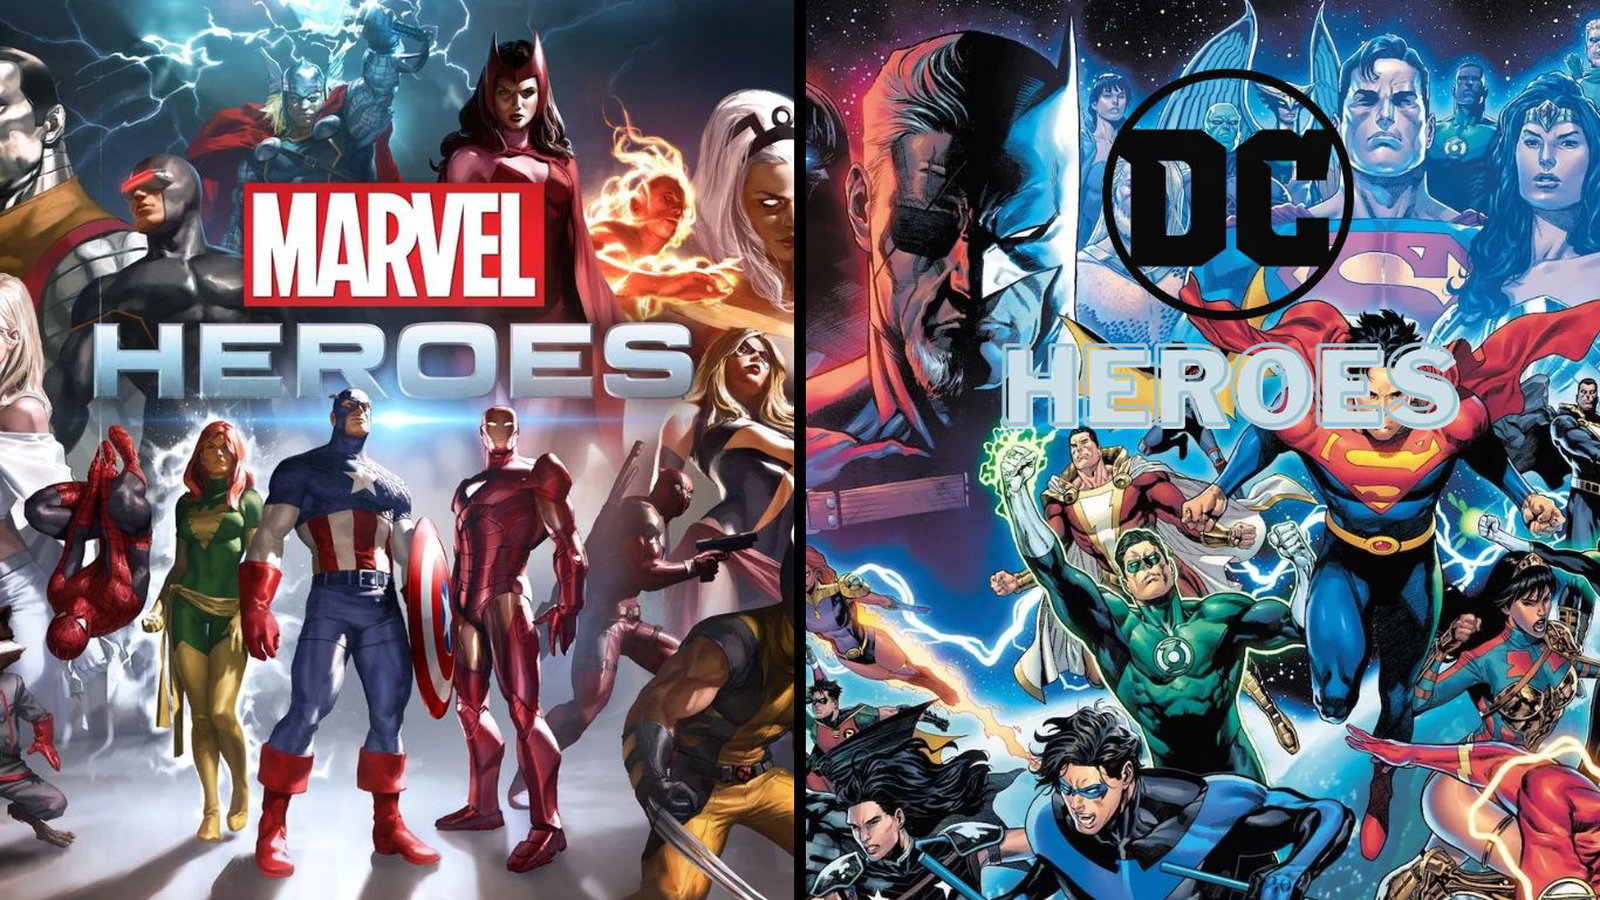 ¿Qué pasaría si los superhéroes de Marvel obtuvieran los poderes de los superhéroes de DC?